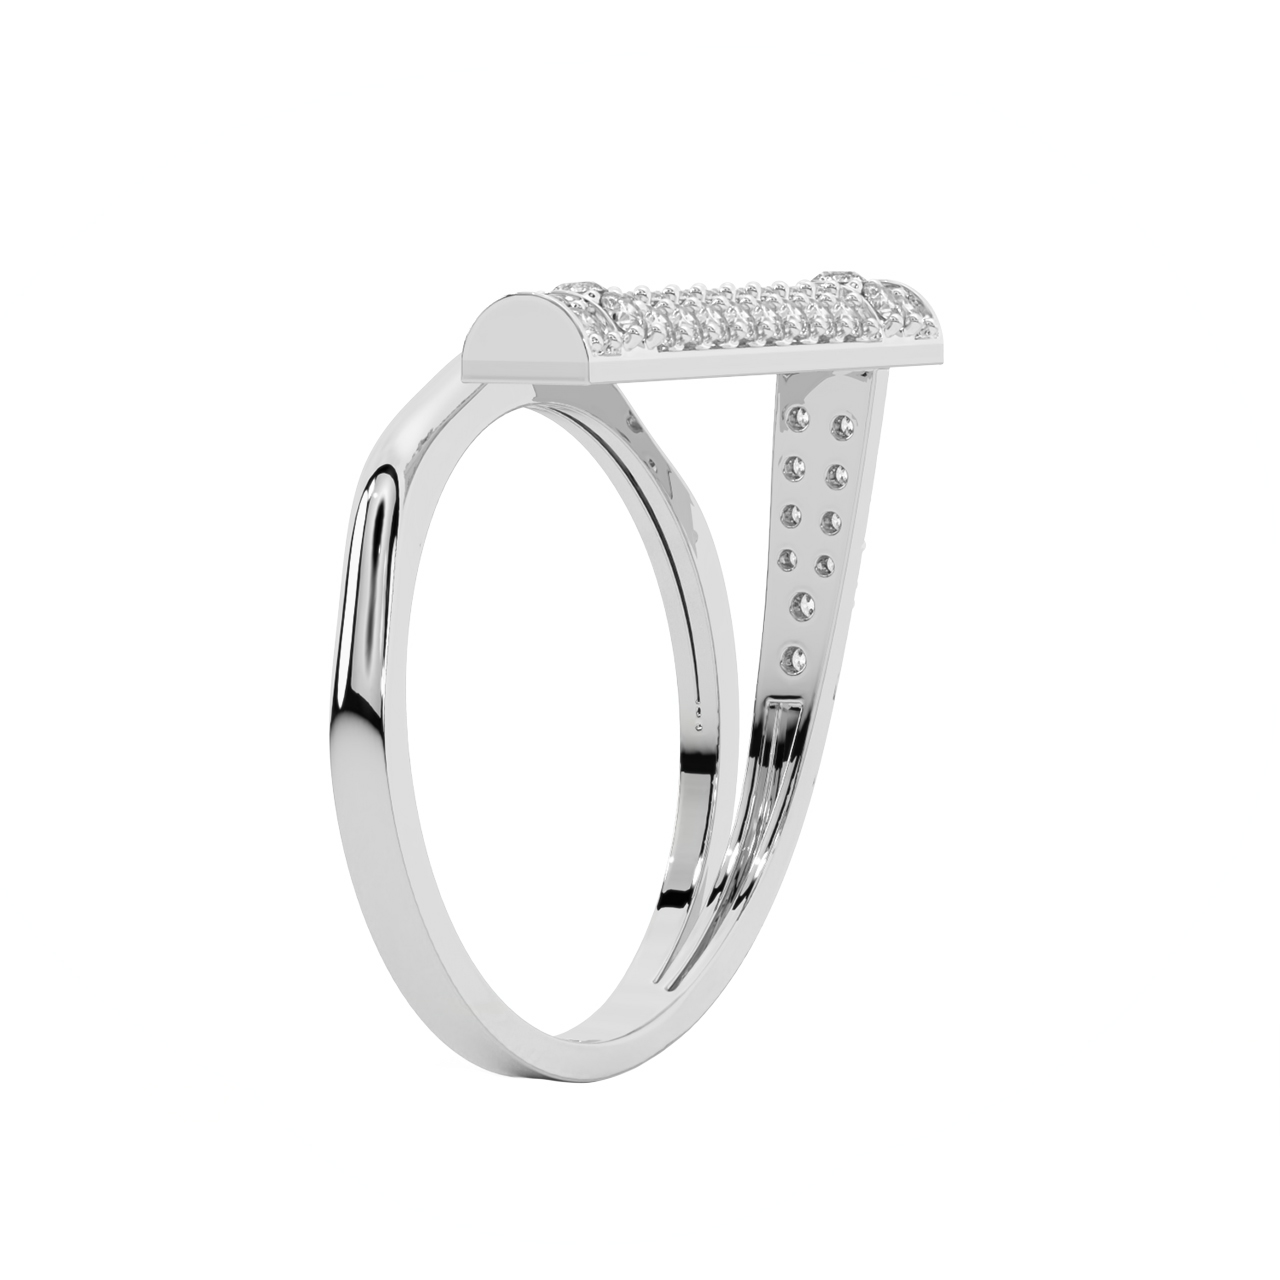 Zabdi Round Diamond Engagement Ring